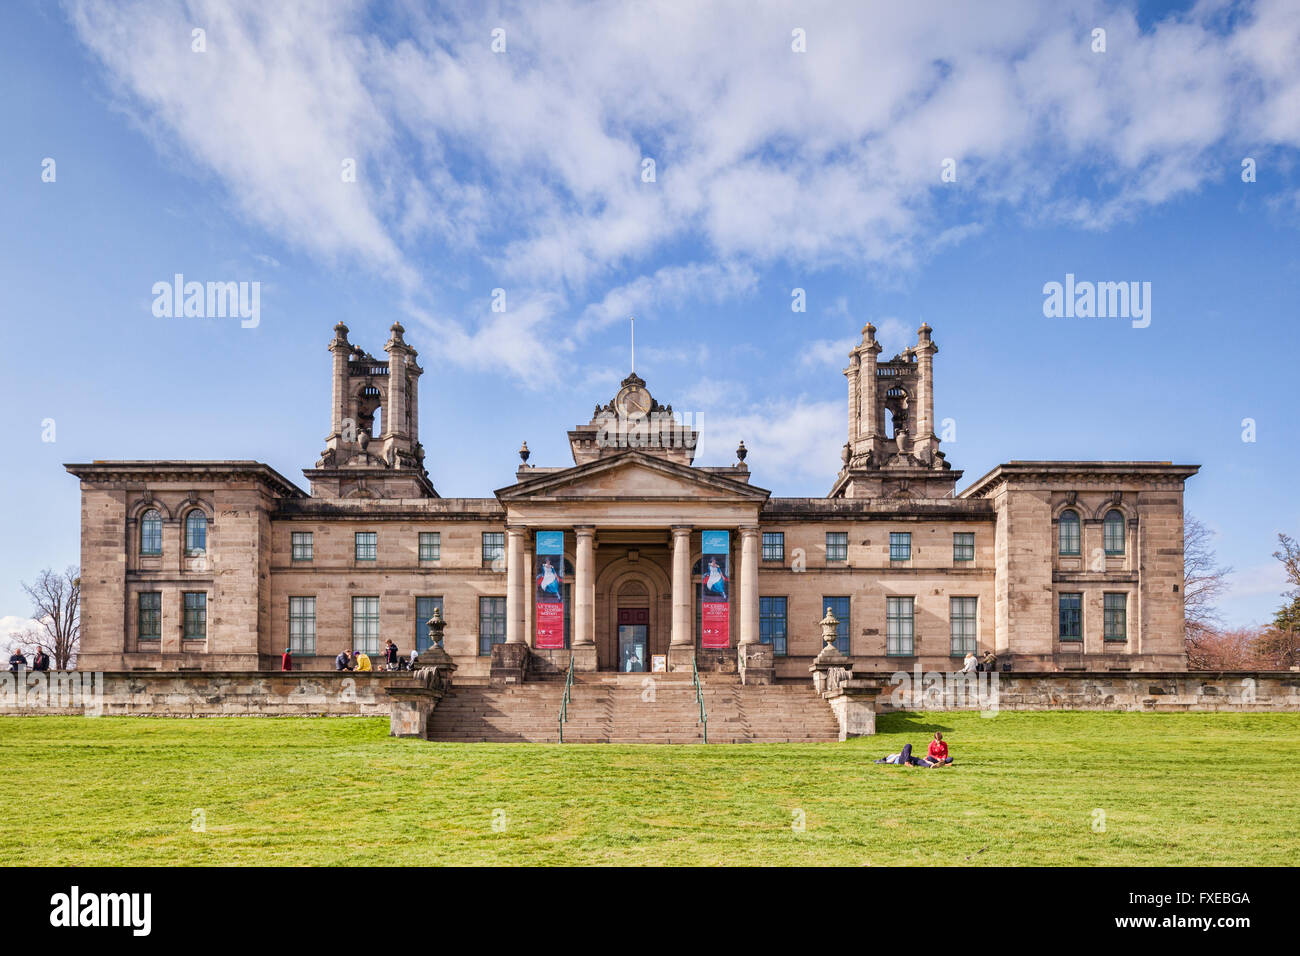 Galería escocesa de Arte Moderno dos, también conocida como la Dean Gallery, Edimburgo, Escocia, Reino Unido Foto de stock